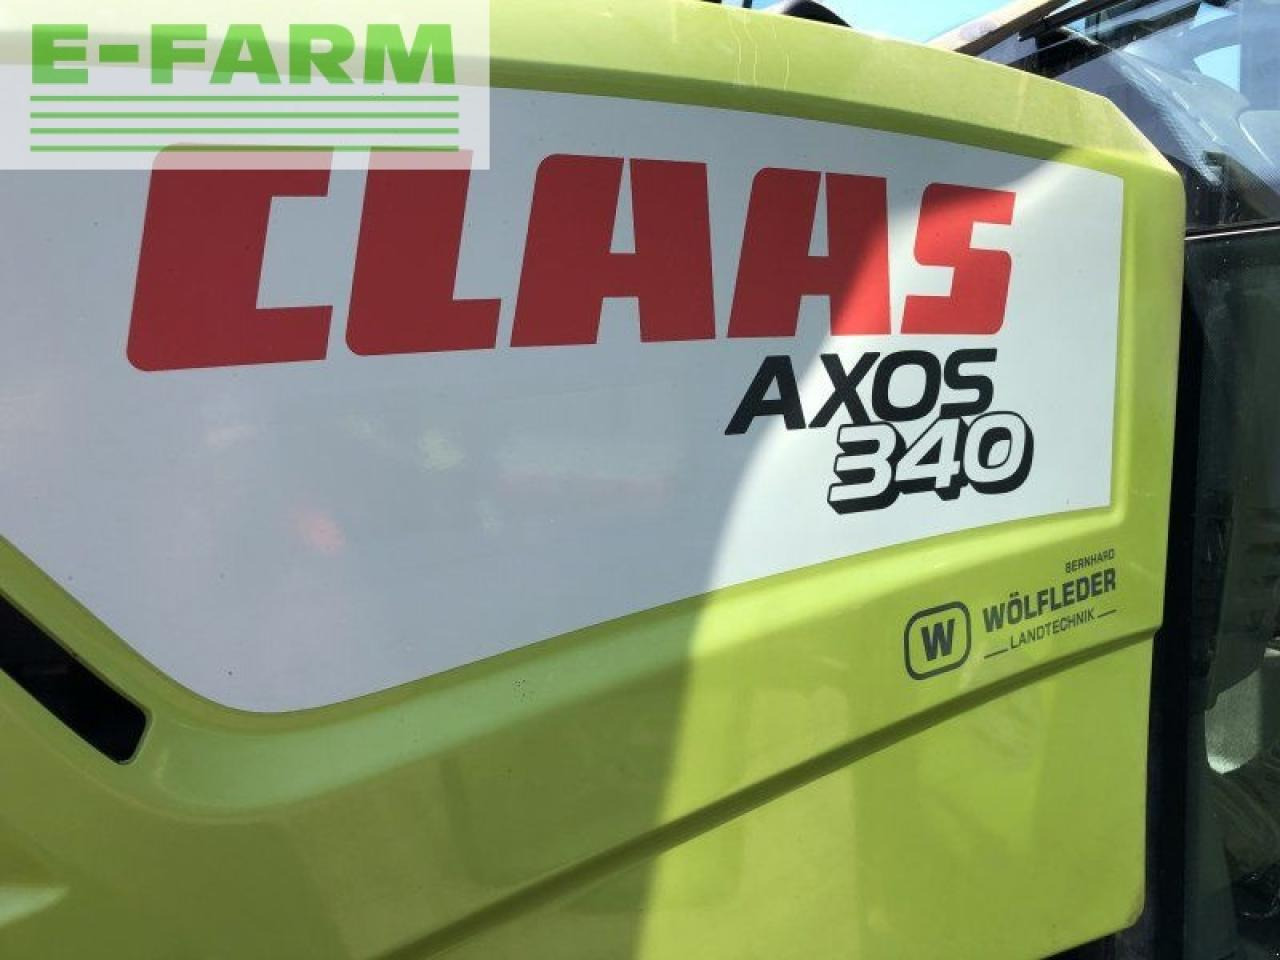 Farm tractor CLAAS axos 340 cx CX